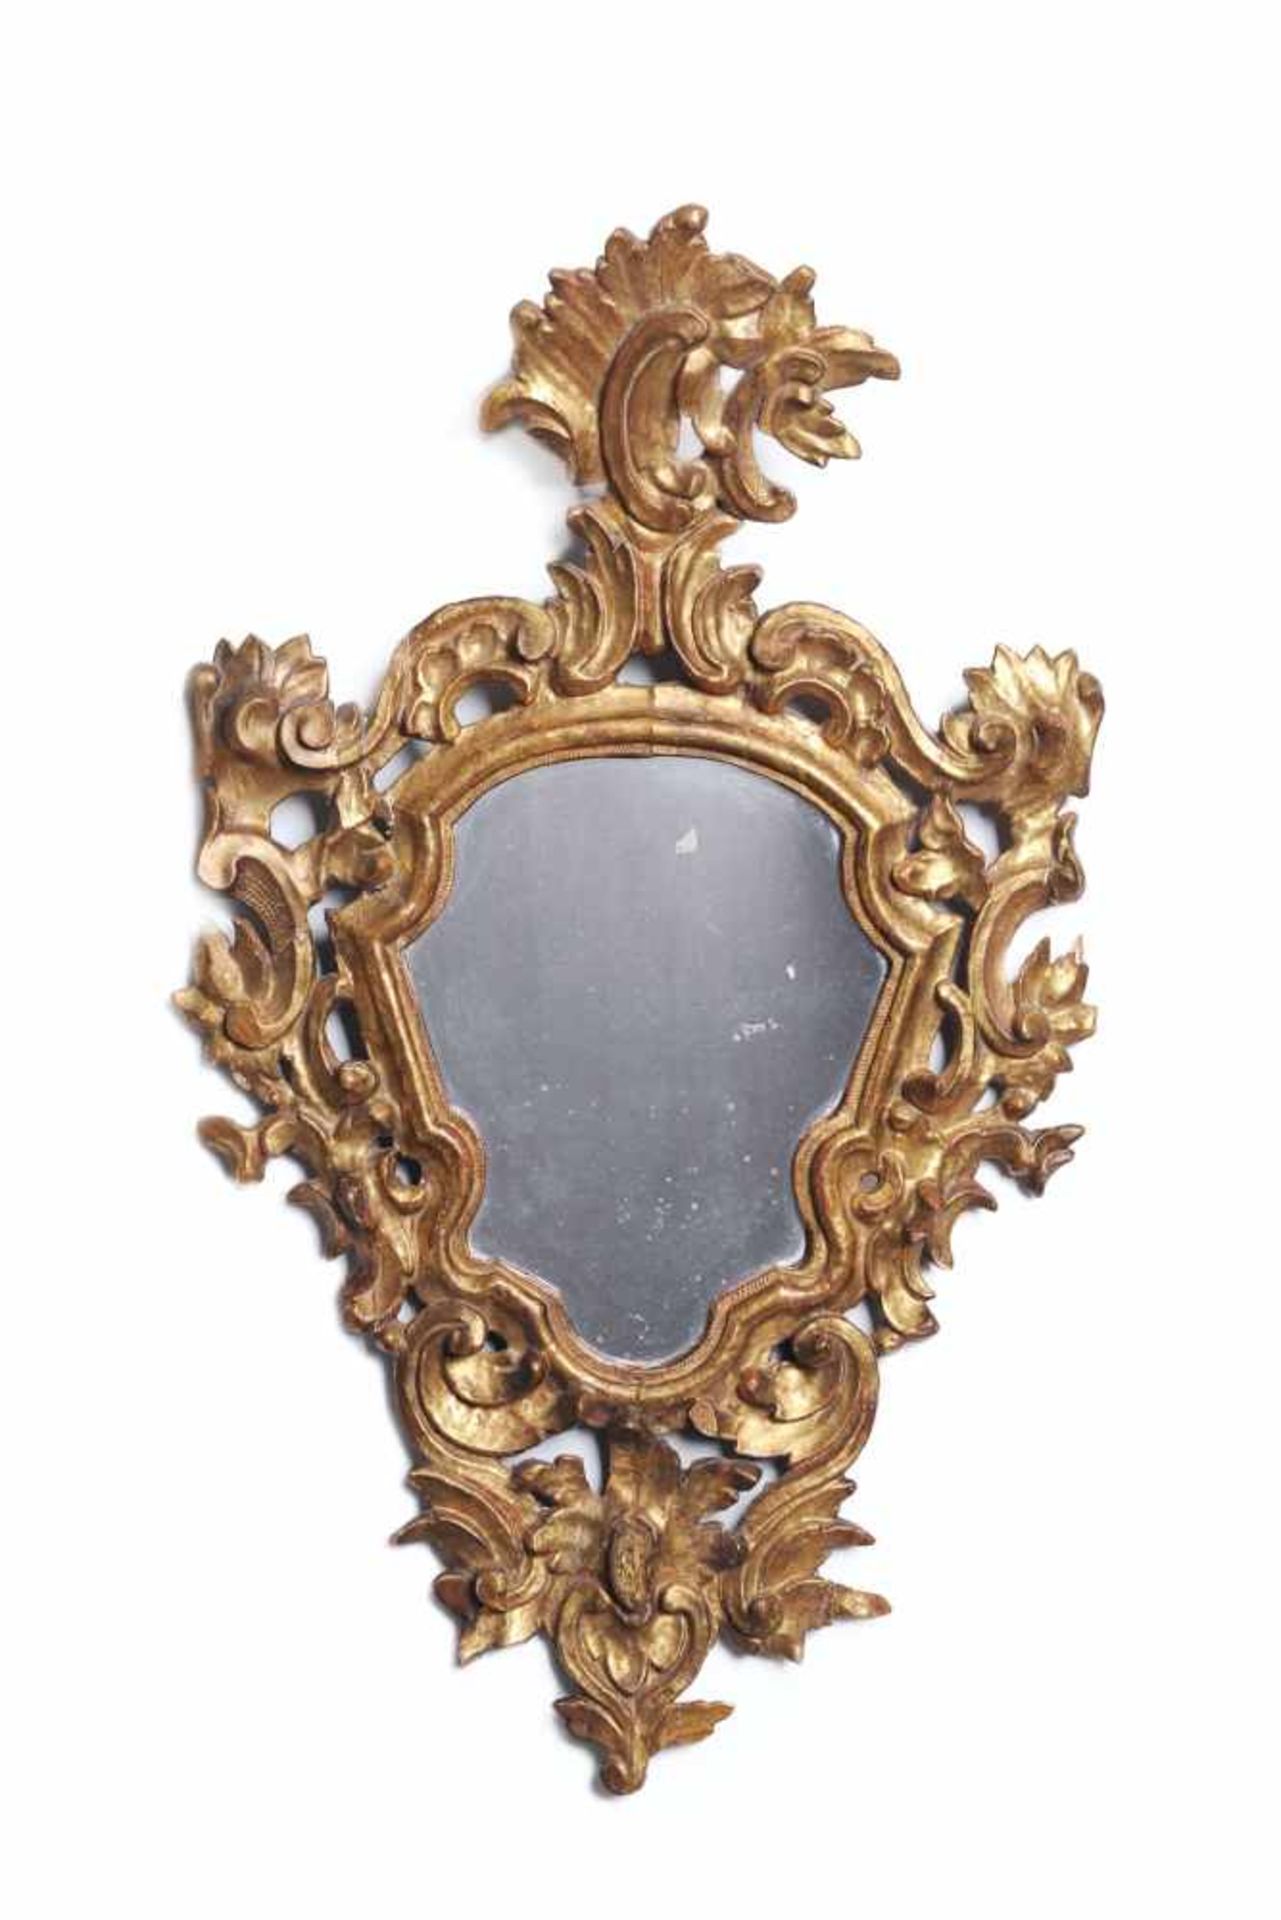 Spiegel in barockem Rahmen. 18. Jh. Holz, geschnitzt, weiß grundiert, mit rotem Bolus und